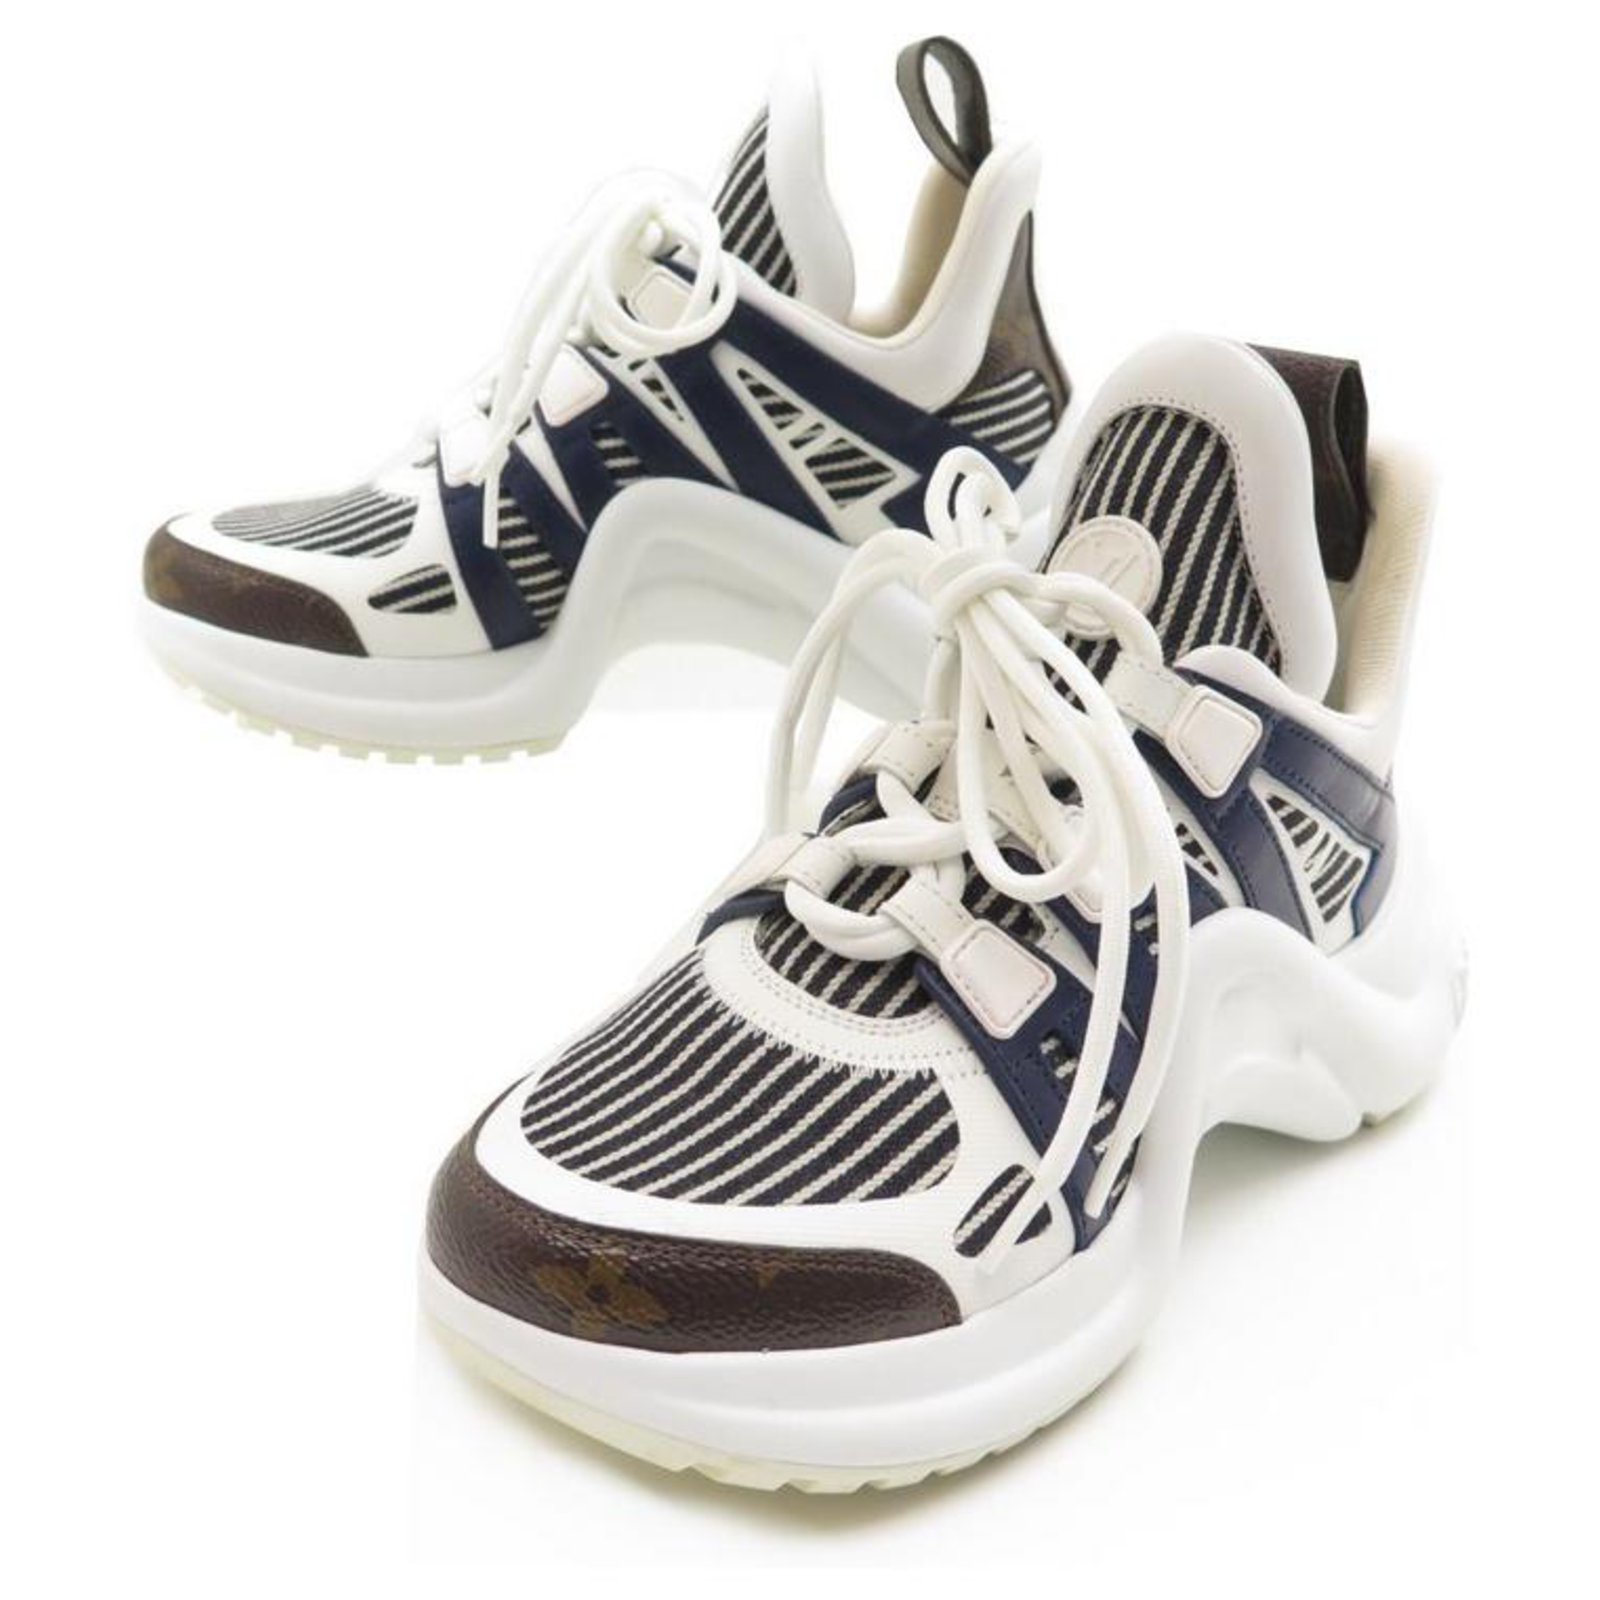 Louis Vuitton, Shoes, Louis Vuitton Archlight Sneakers